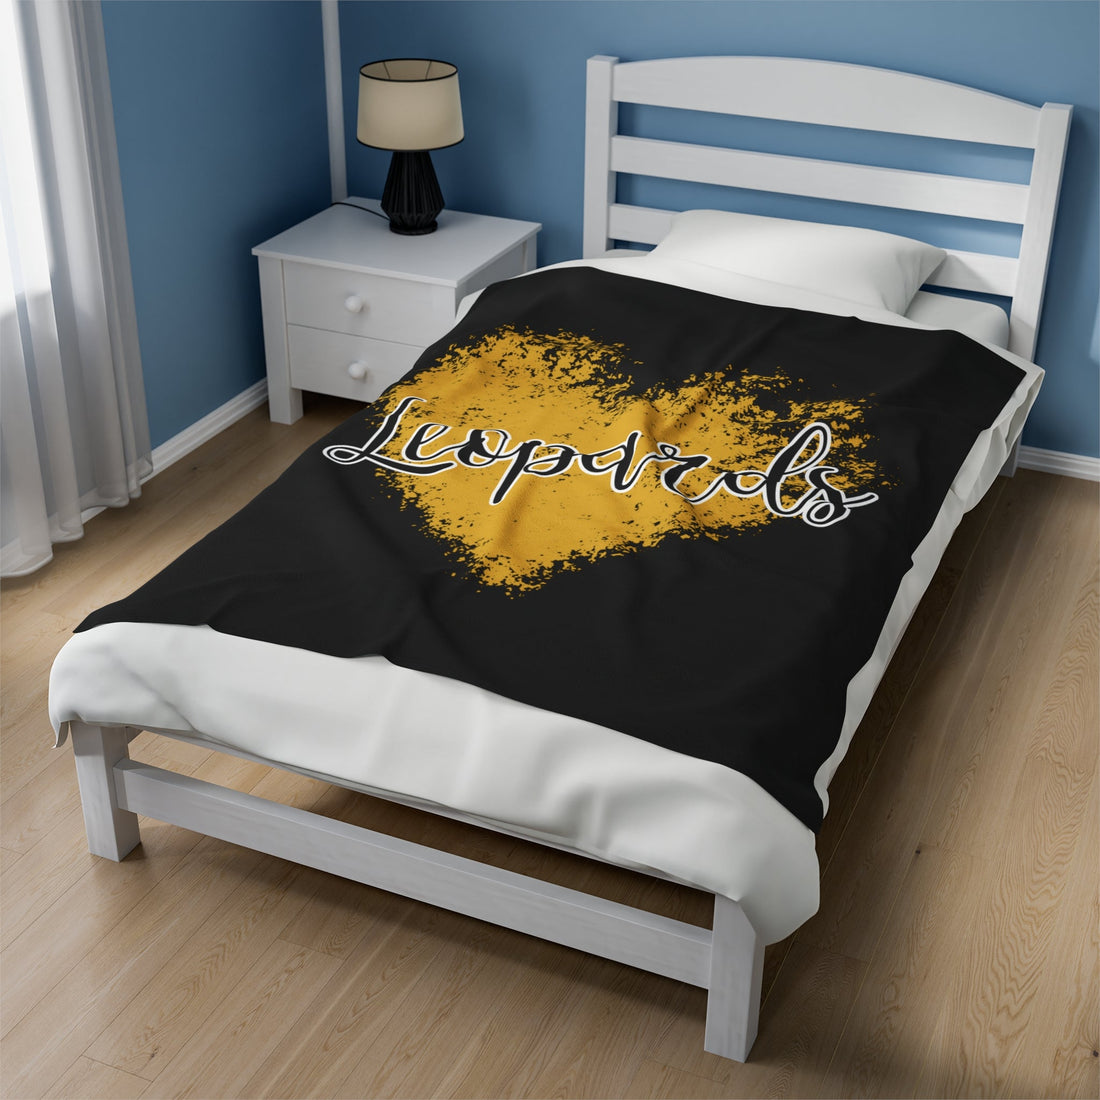 Leopards Love Velveteen Plush Blanket - All Over Prints - Positively Sassy - Leopards Love Velveteen Plush Blanket